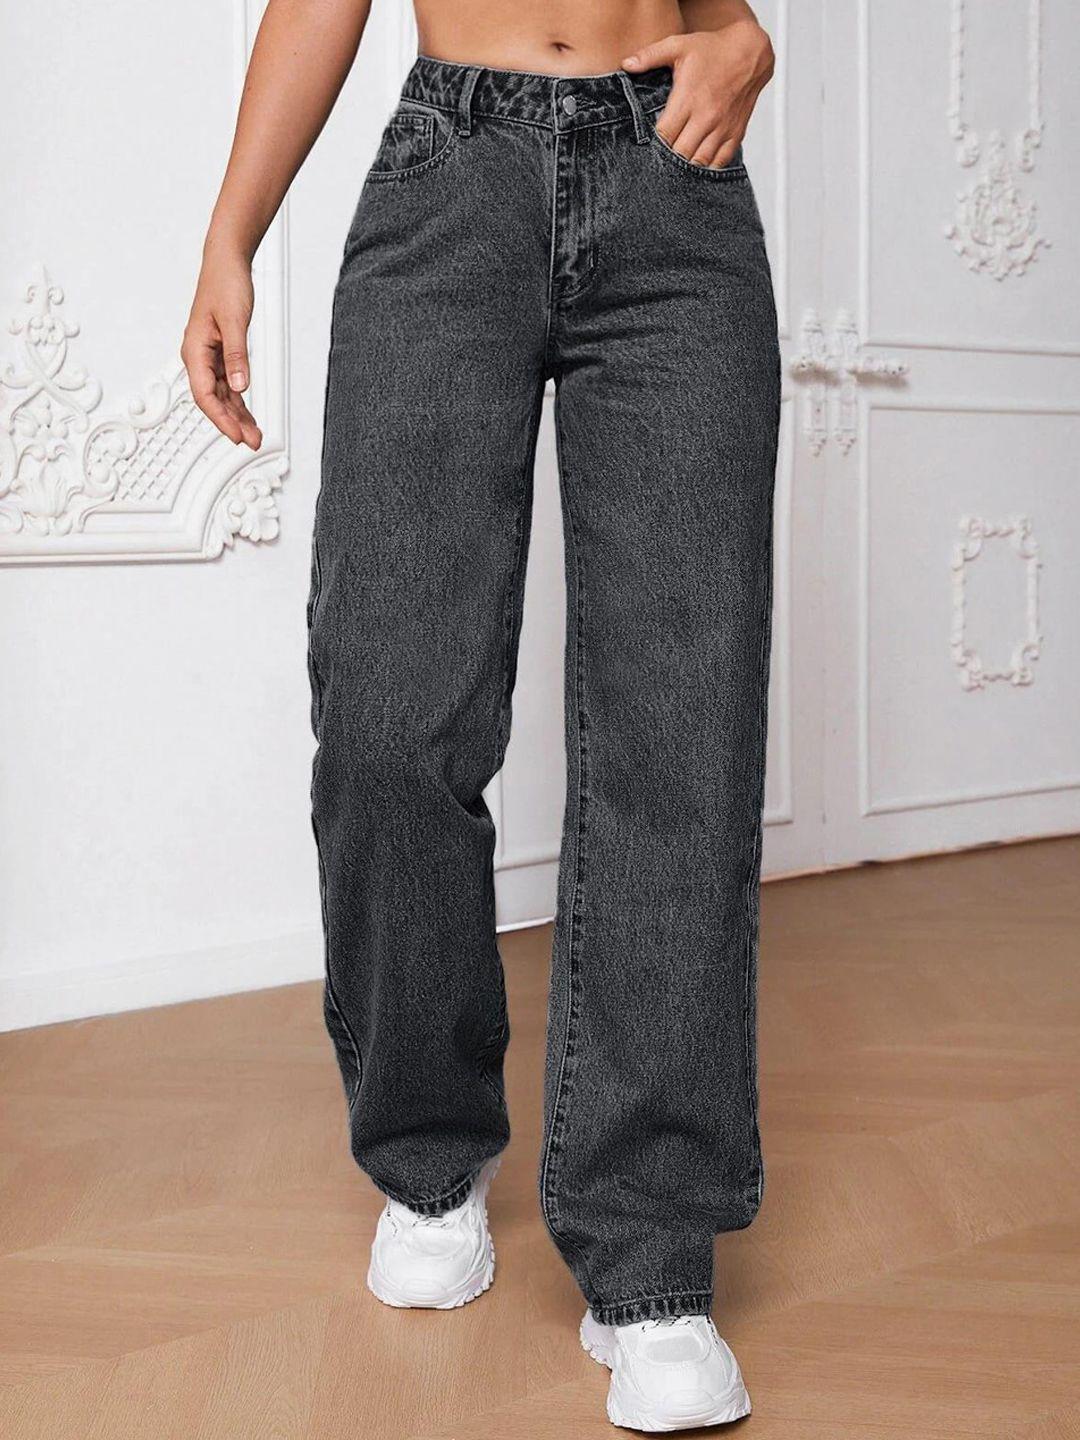 kotty women jean light fade wide leg stretchable jeans